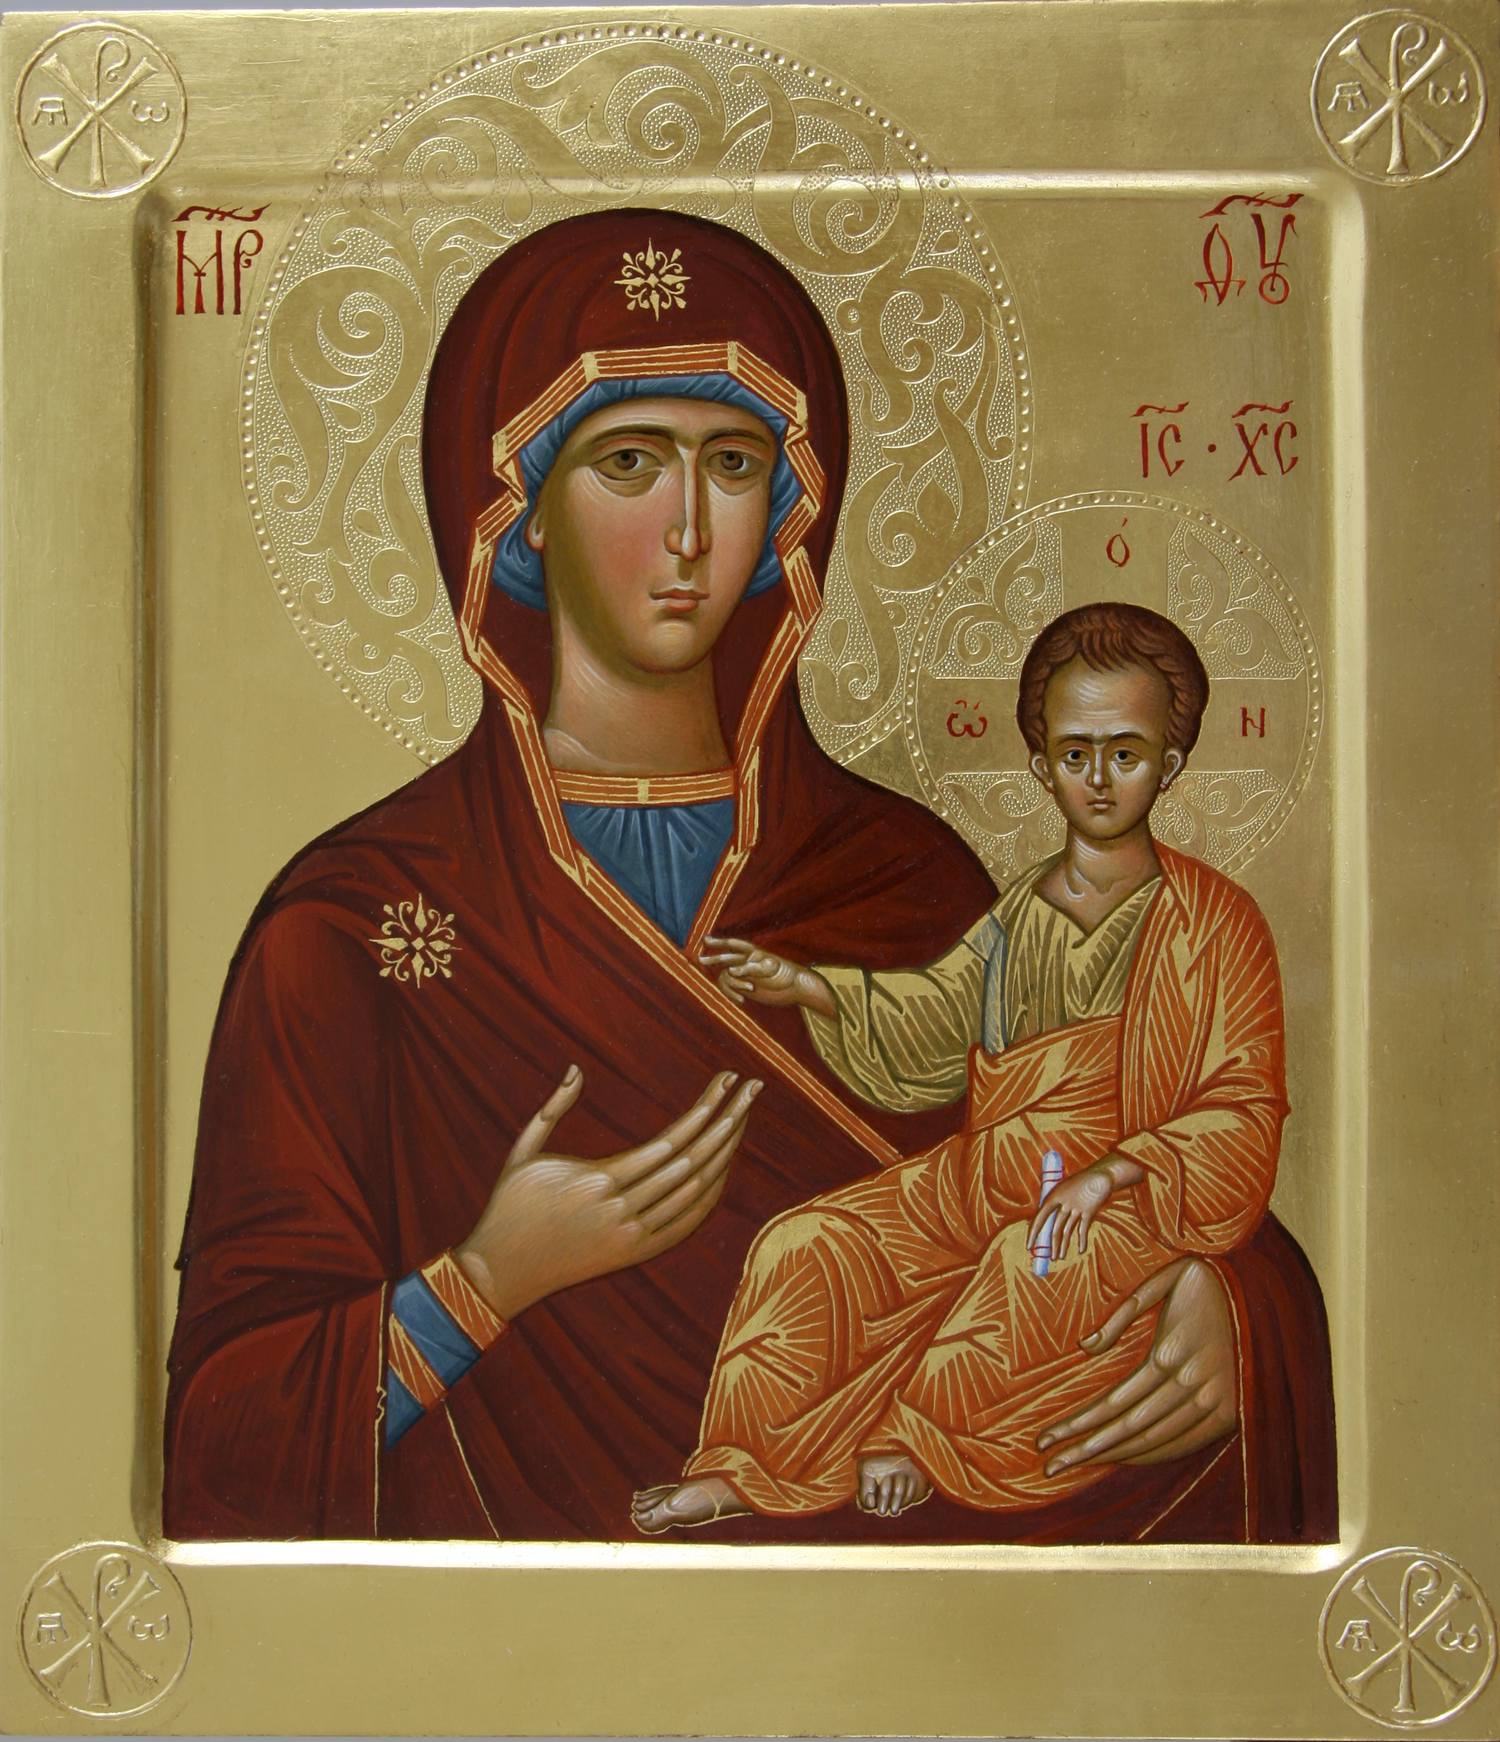 Смоленской иконы Божией Матери, именуемой «Одигитрия» (Путеводительница) (принесена из Царьграда в 1046 г.)